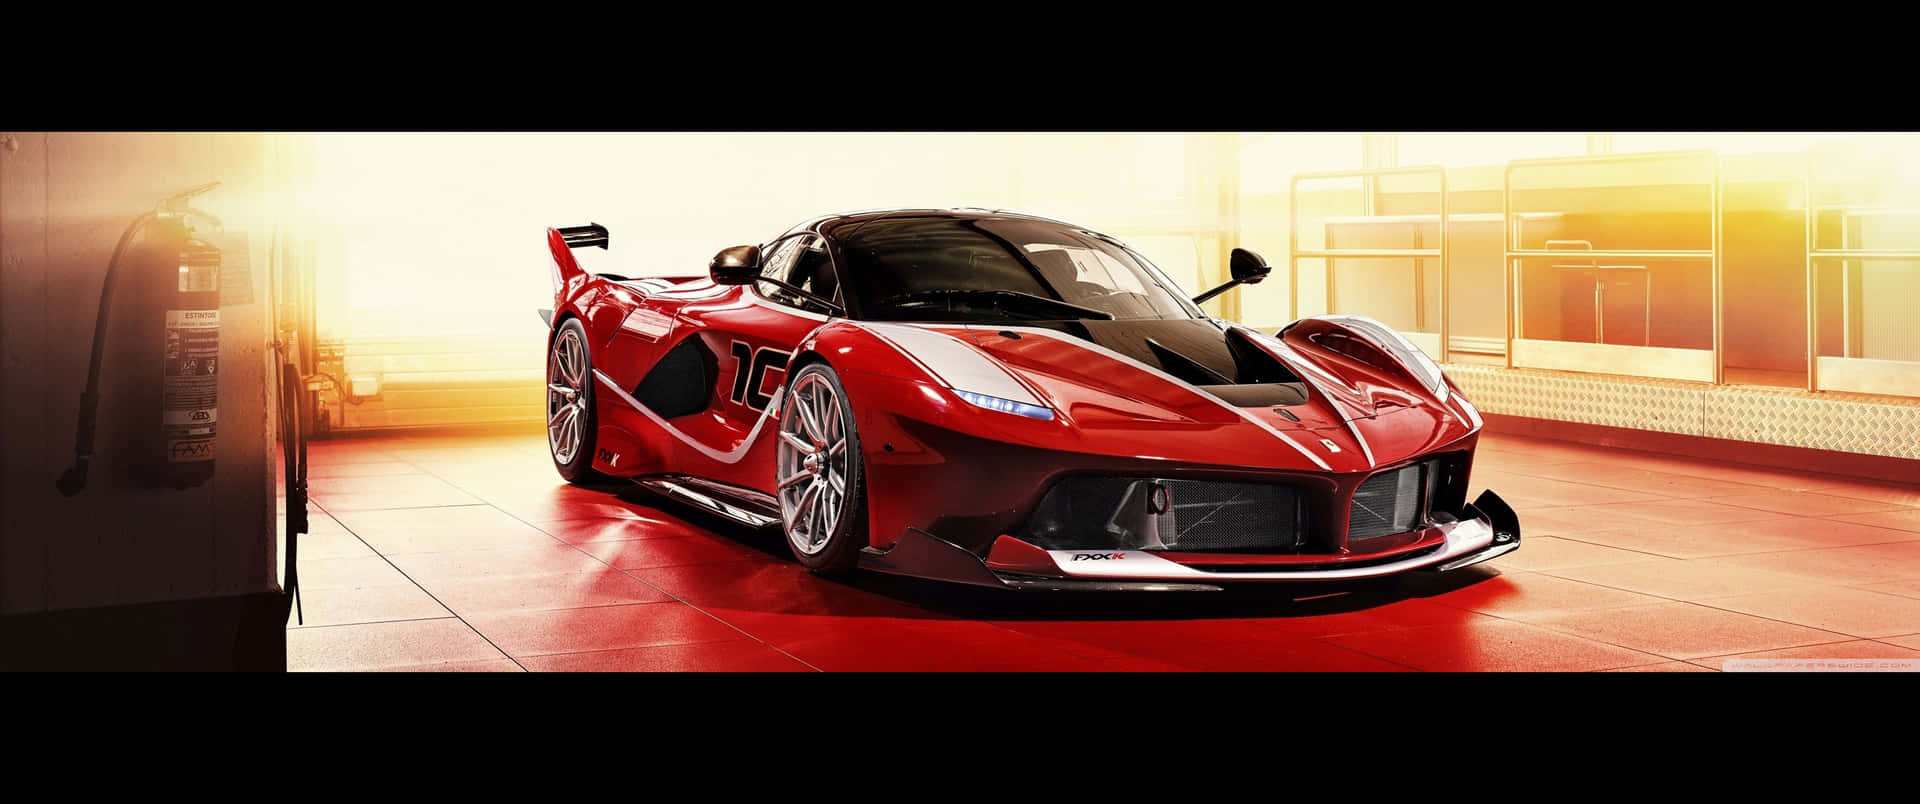 3440x1440p Ferrari Background Fxx Background